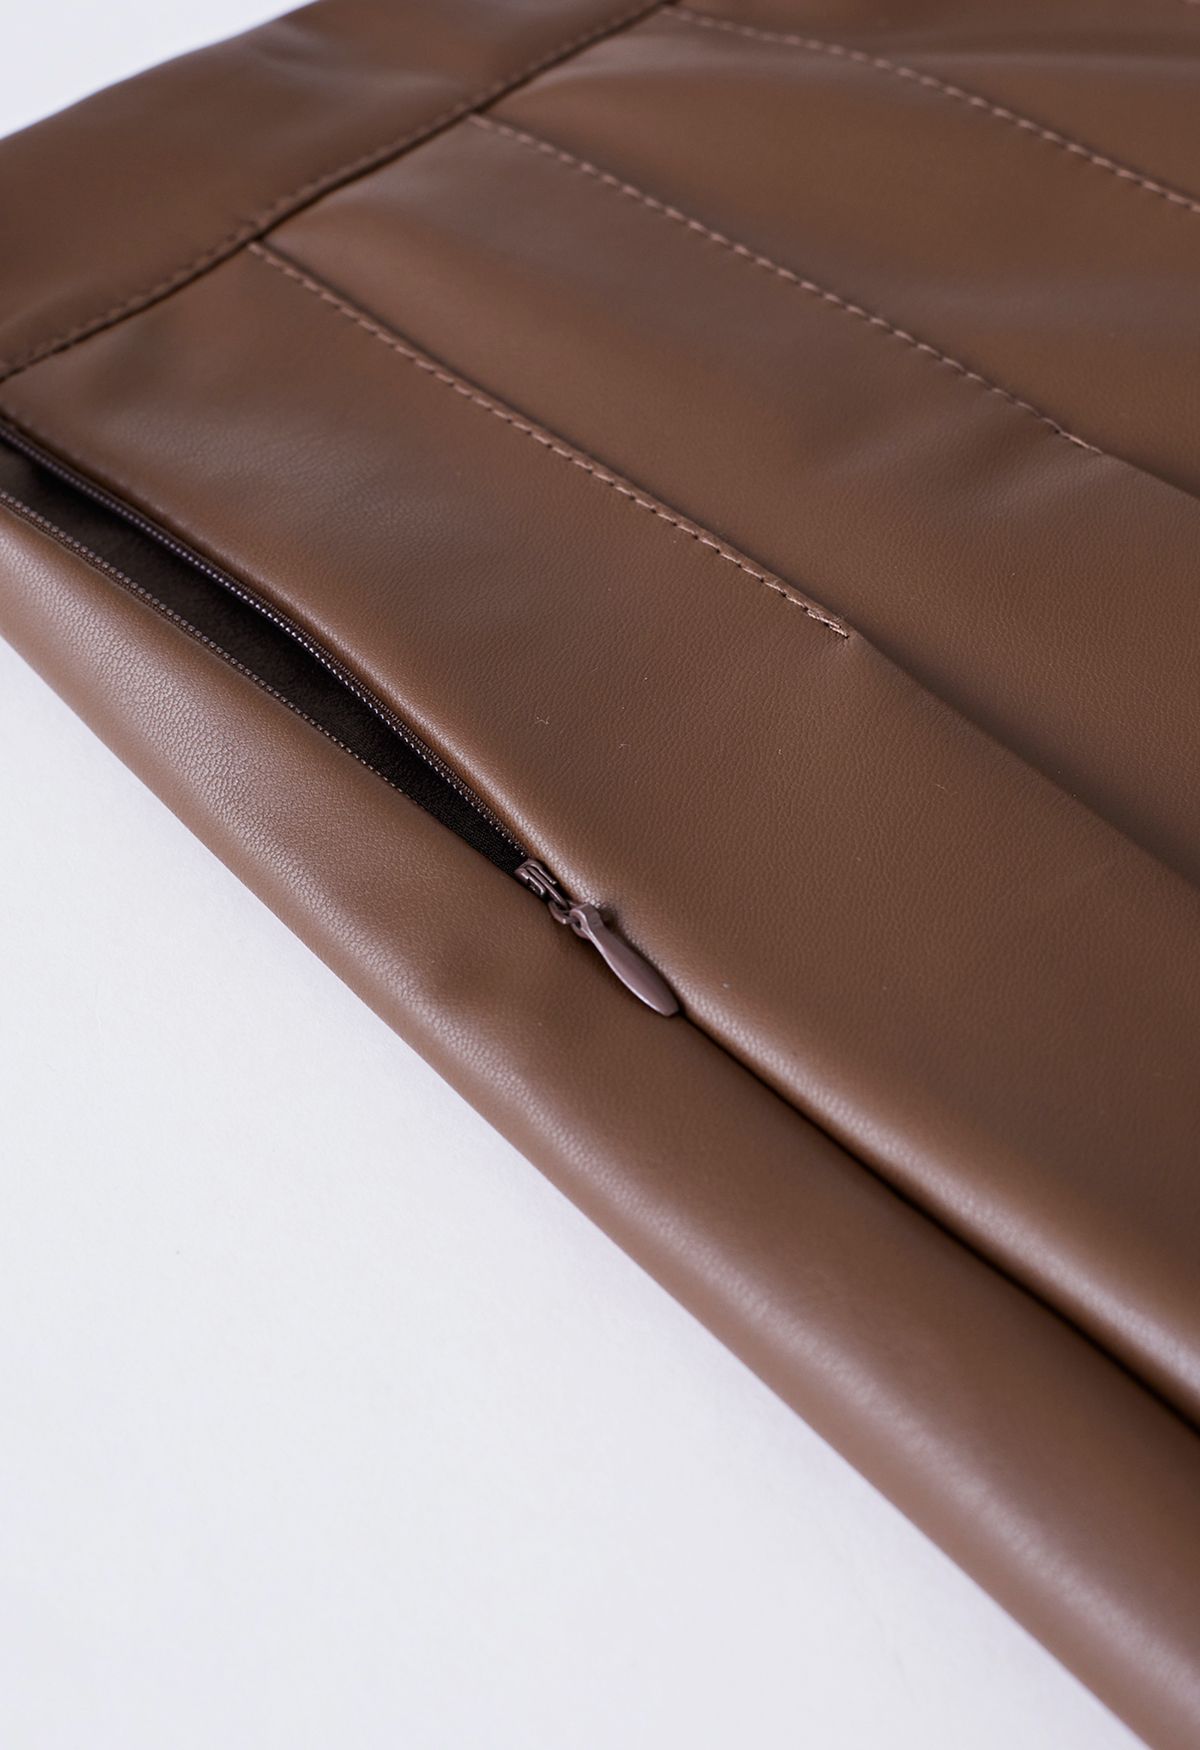 Minifalda acampanada plisada de cuero sintético en marrón